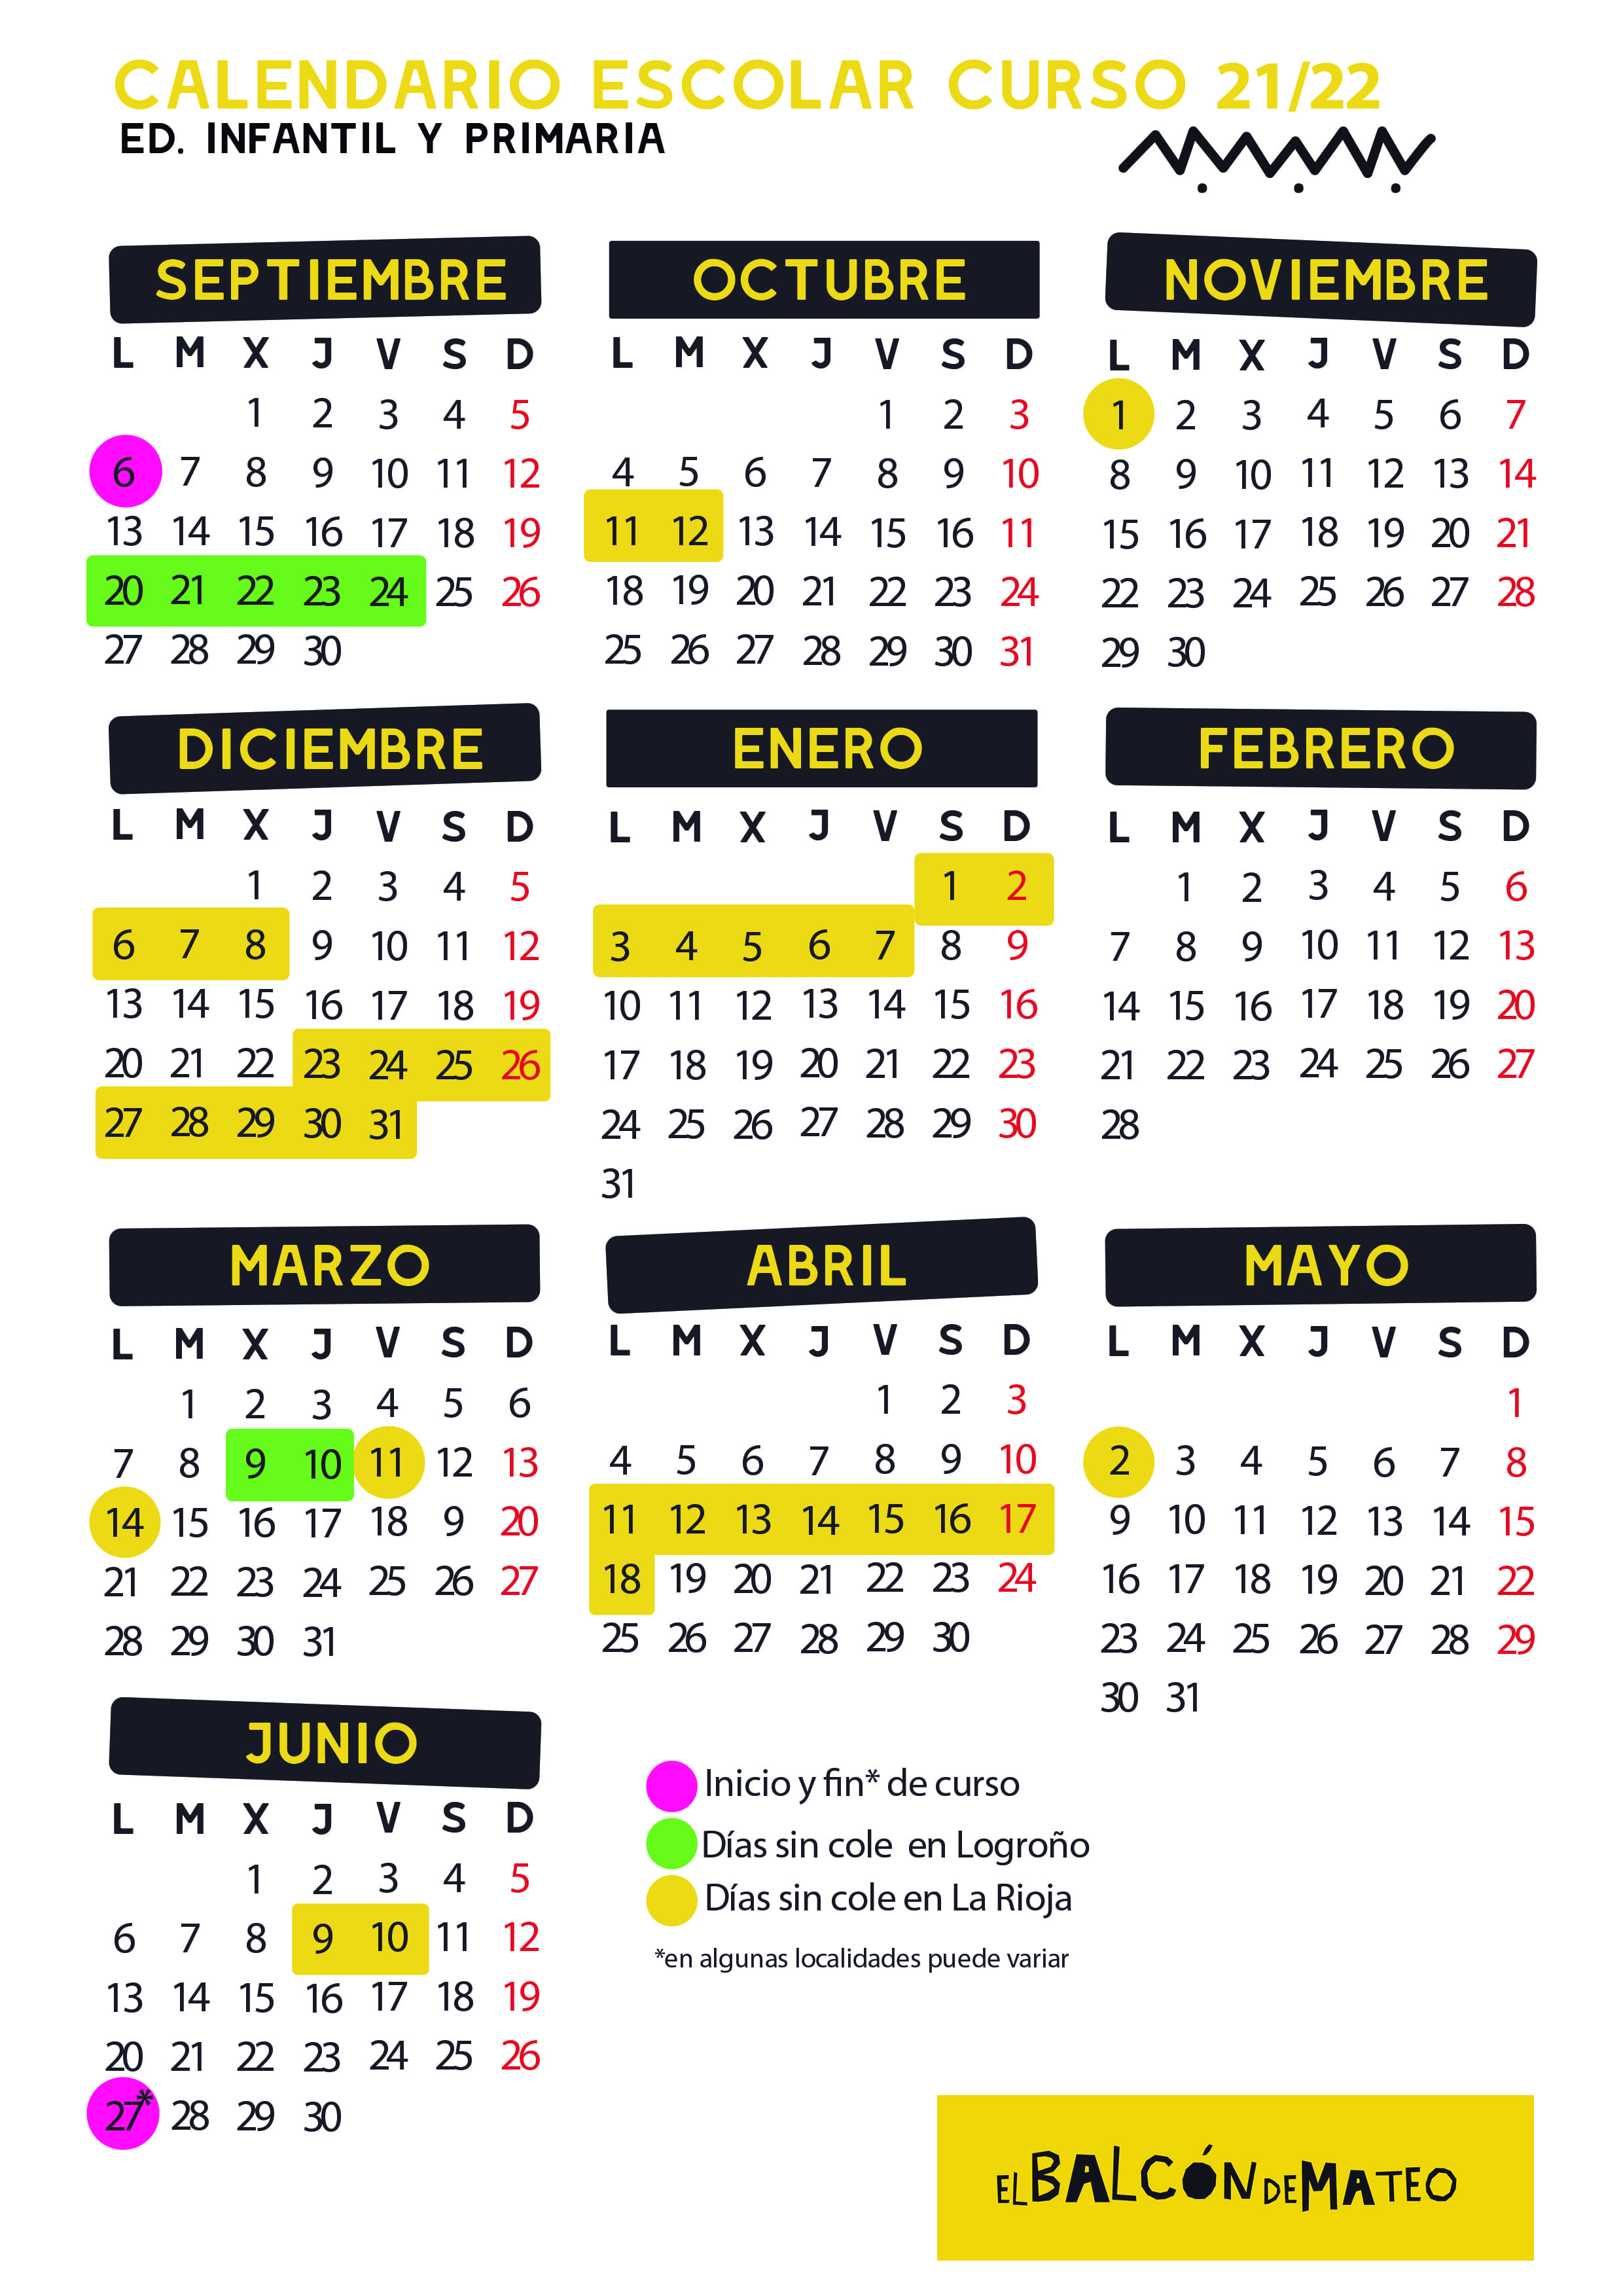 Calendario La Rioja 2023 Calendario escolar 2021/2022 La Rioja y Logroño (para imprimir)